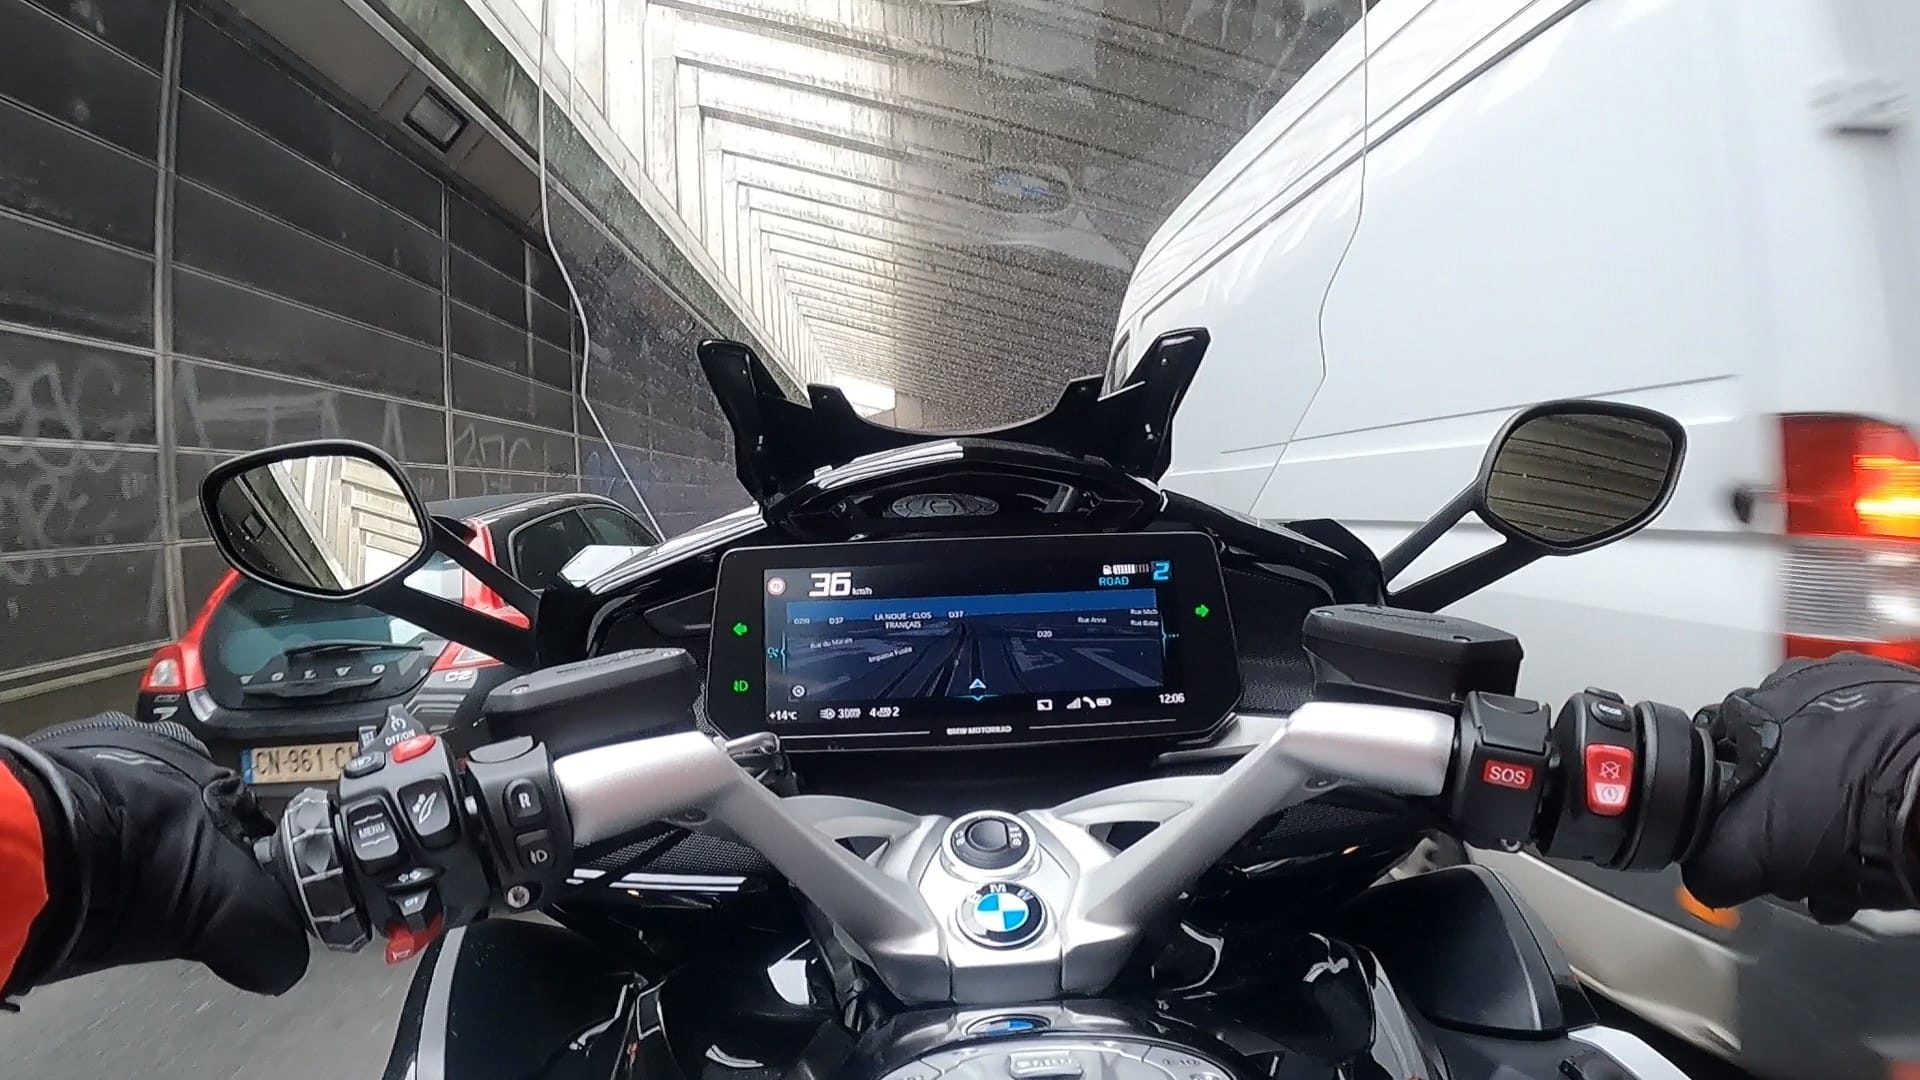 Photo du tableau de bord de la BMW K 1600 GT lors d'un passage en inter-file.